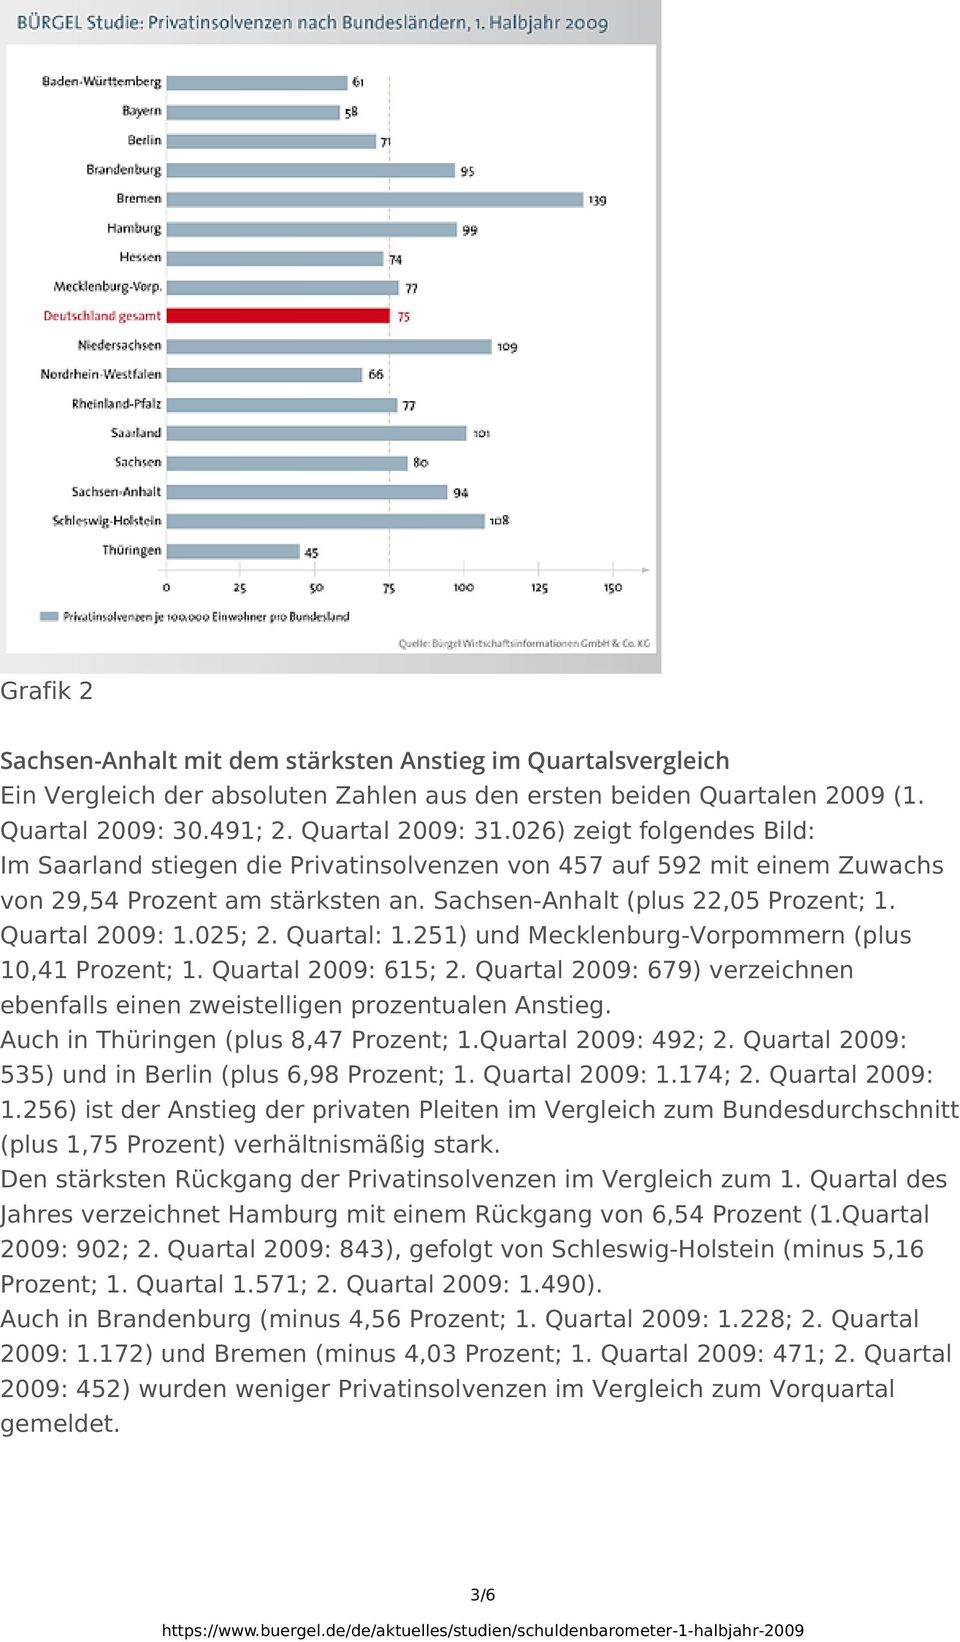 Quartal: 1.251) und Mecklenburg-Vorpommern (plus 10,41 Prozent; 1. Quartal 2009: 615; 2. Quartal 2009: 679) verzeichnen ebenfalls einen zweistelligen prozentualen Anstieg.